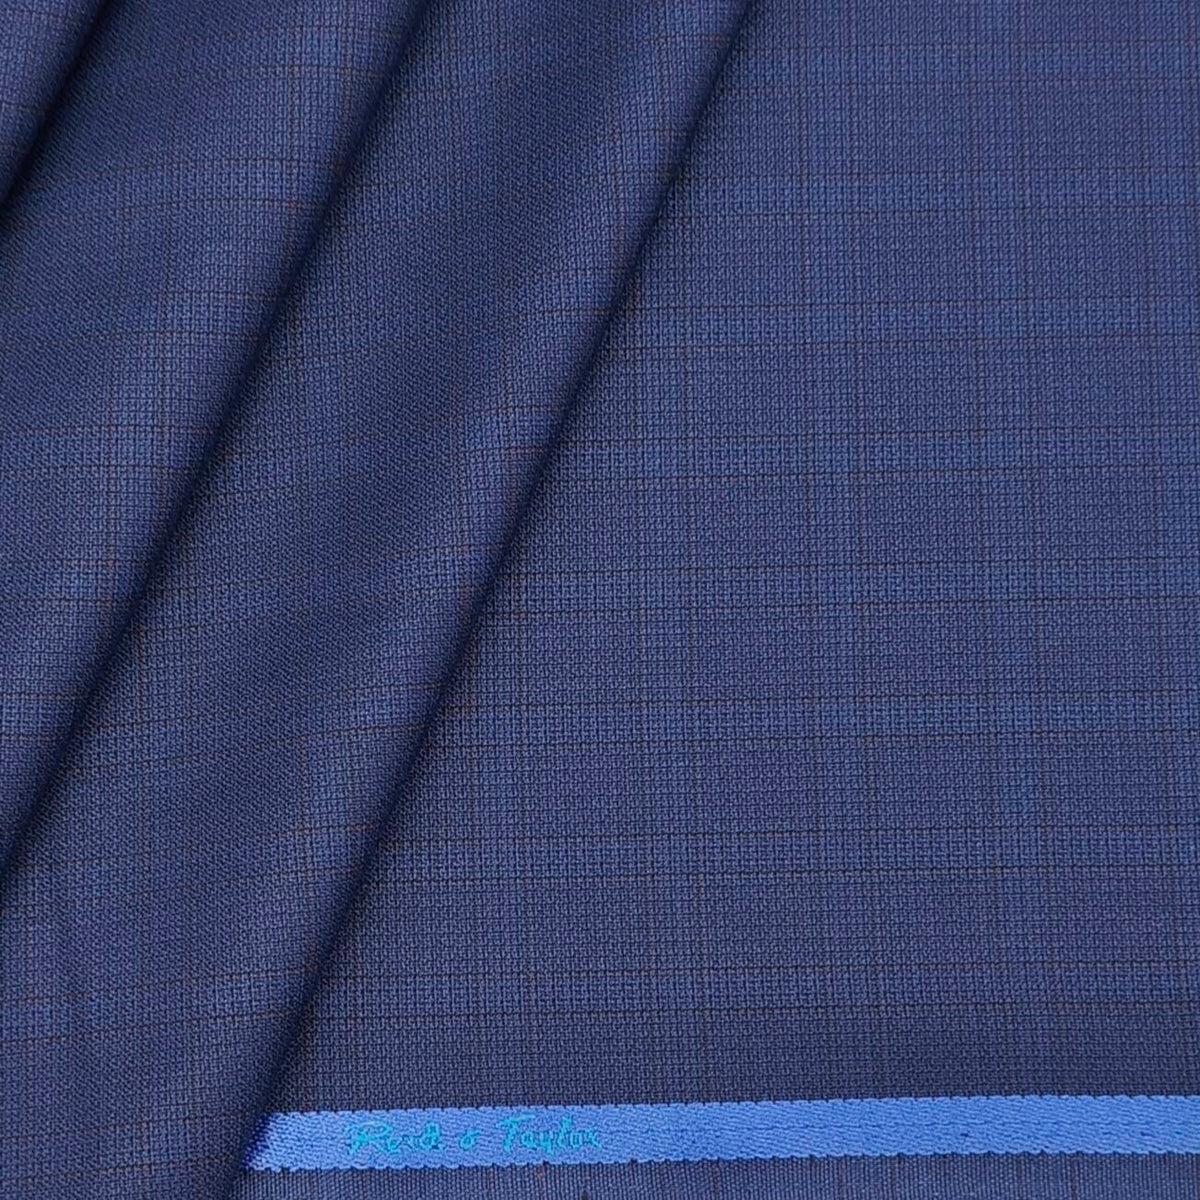 Reid n Taylor Men's Premium check unstitched Pant Fabric (Blue)